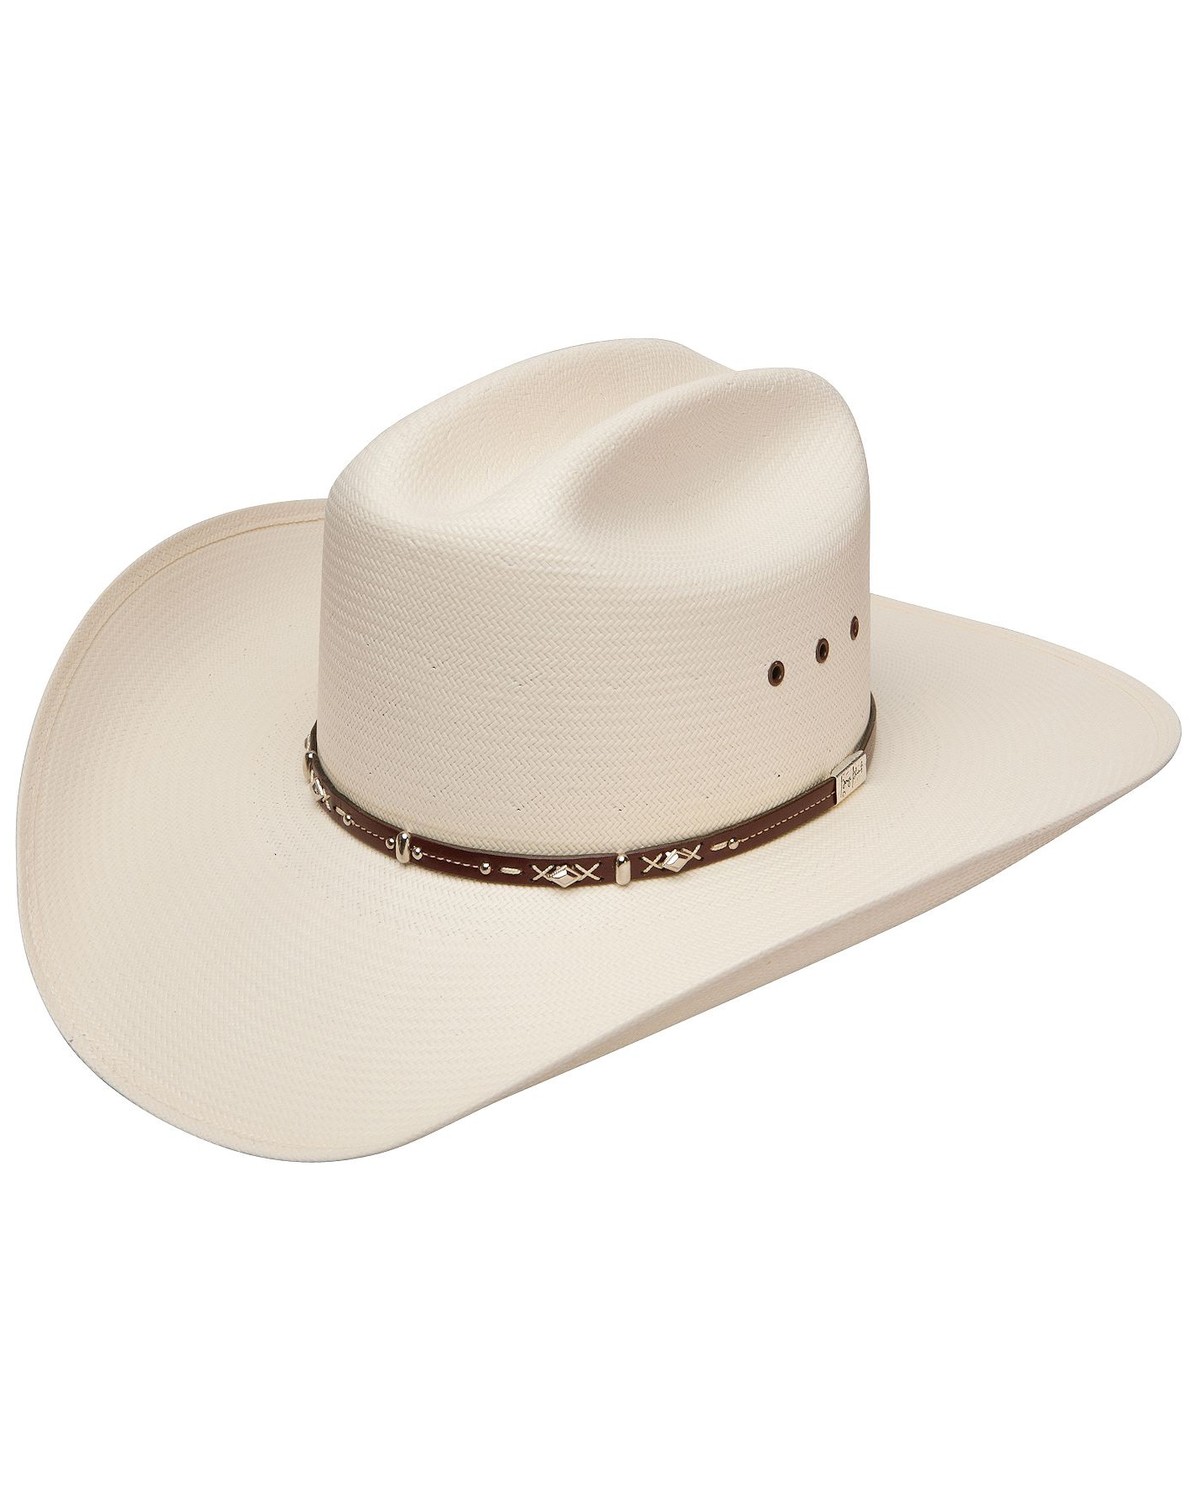 Men's George Strait Cowboy Hats